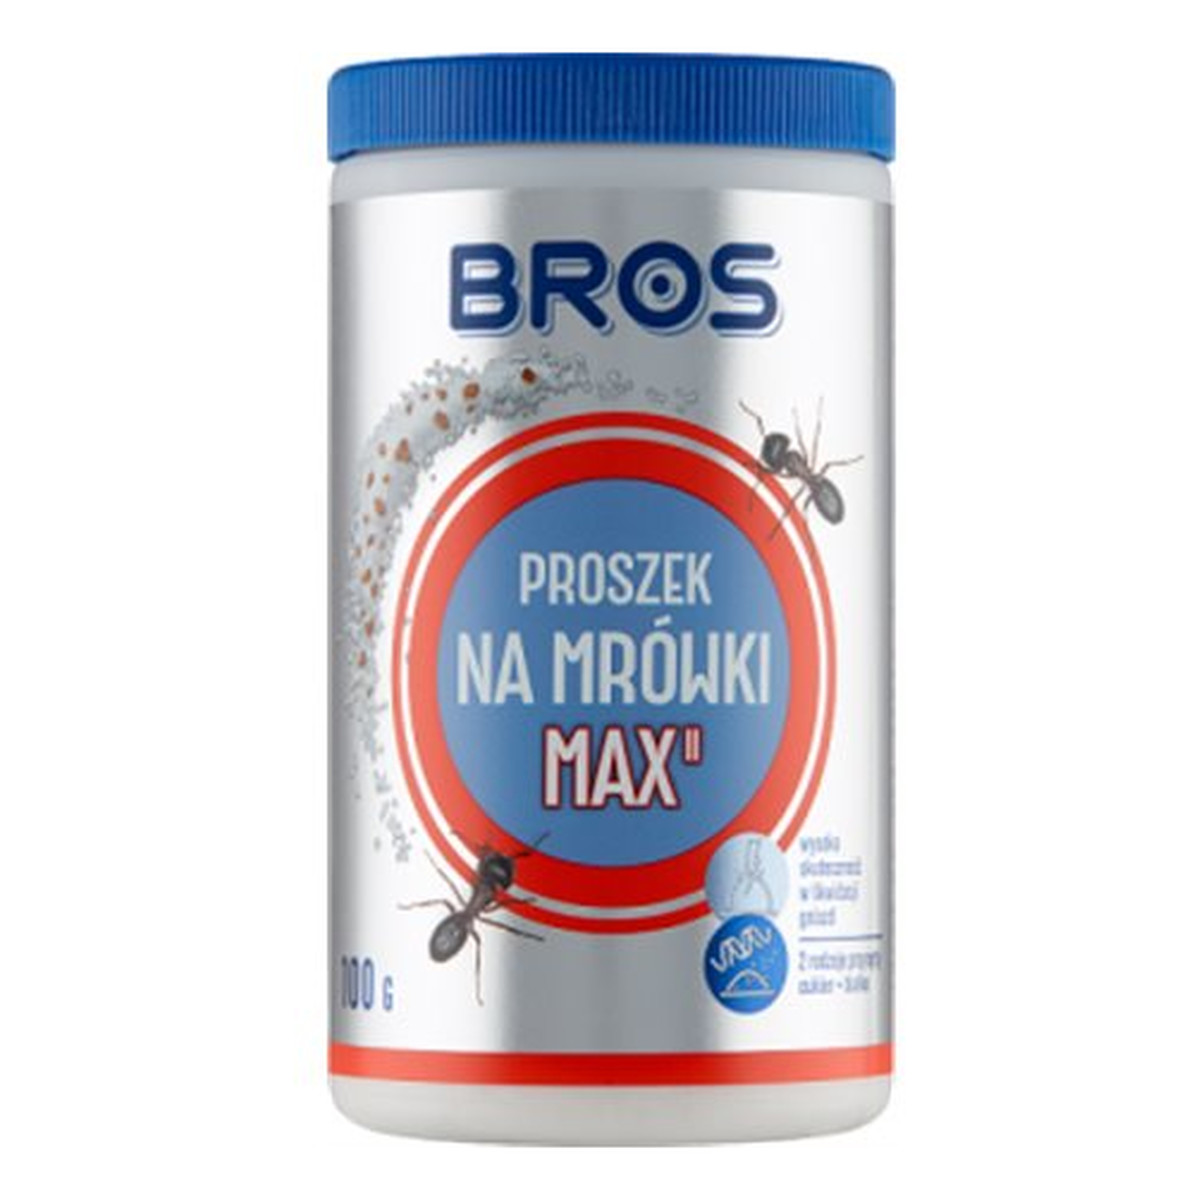 Bros Proszek Na Mrówki MAX 100g